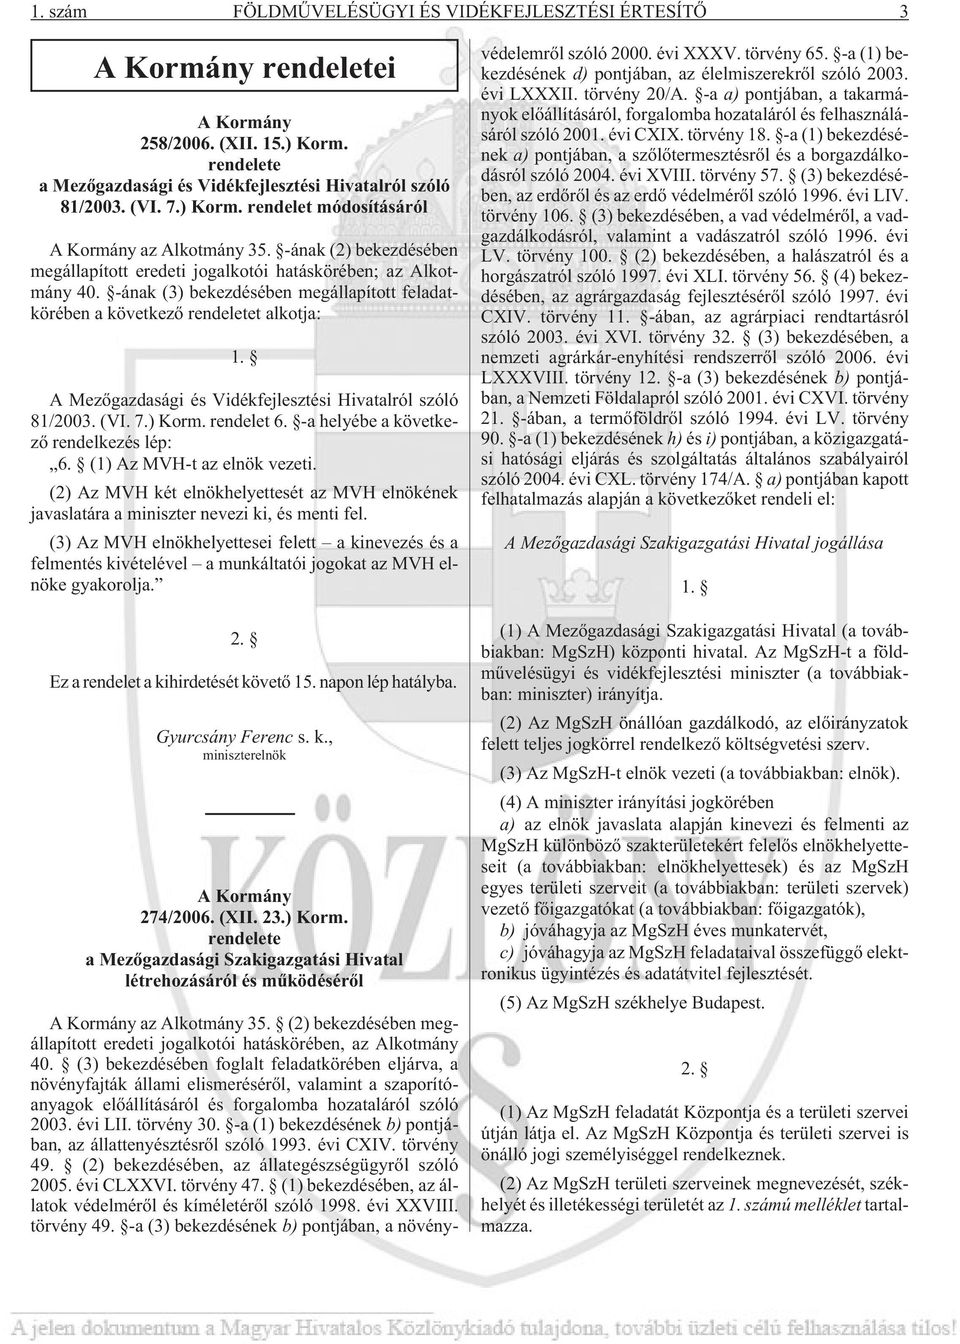 A Mezõgazdasági és Vidékfejlesztési Hivatalról szóló 81/2003. (VI. 7.) Korm. rendelet 6. -a helyébe a következõ rendelkezés lép: 6. (1) Az MVH-t az elnök vezeti.